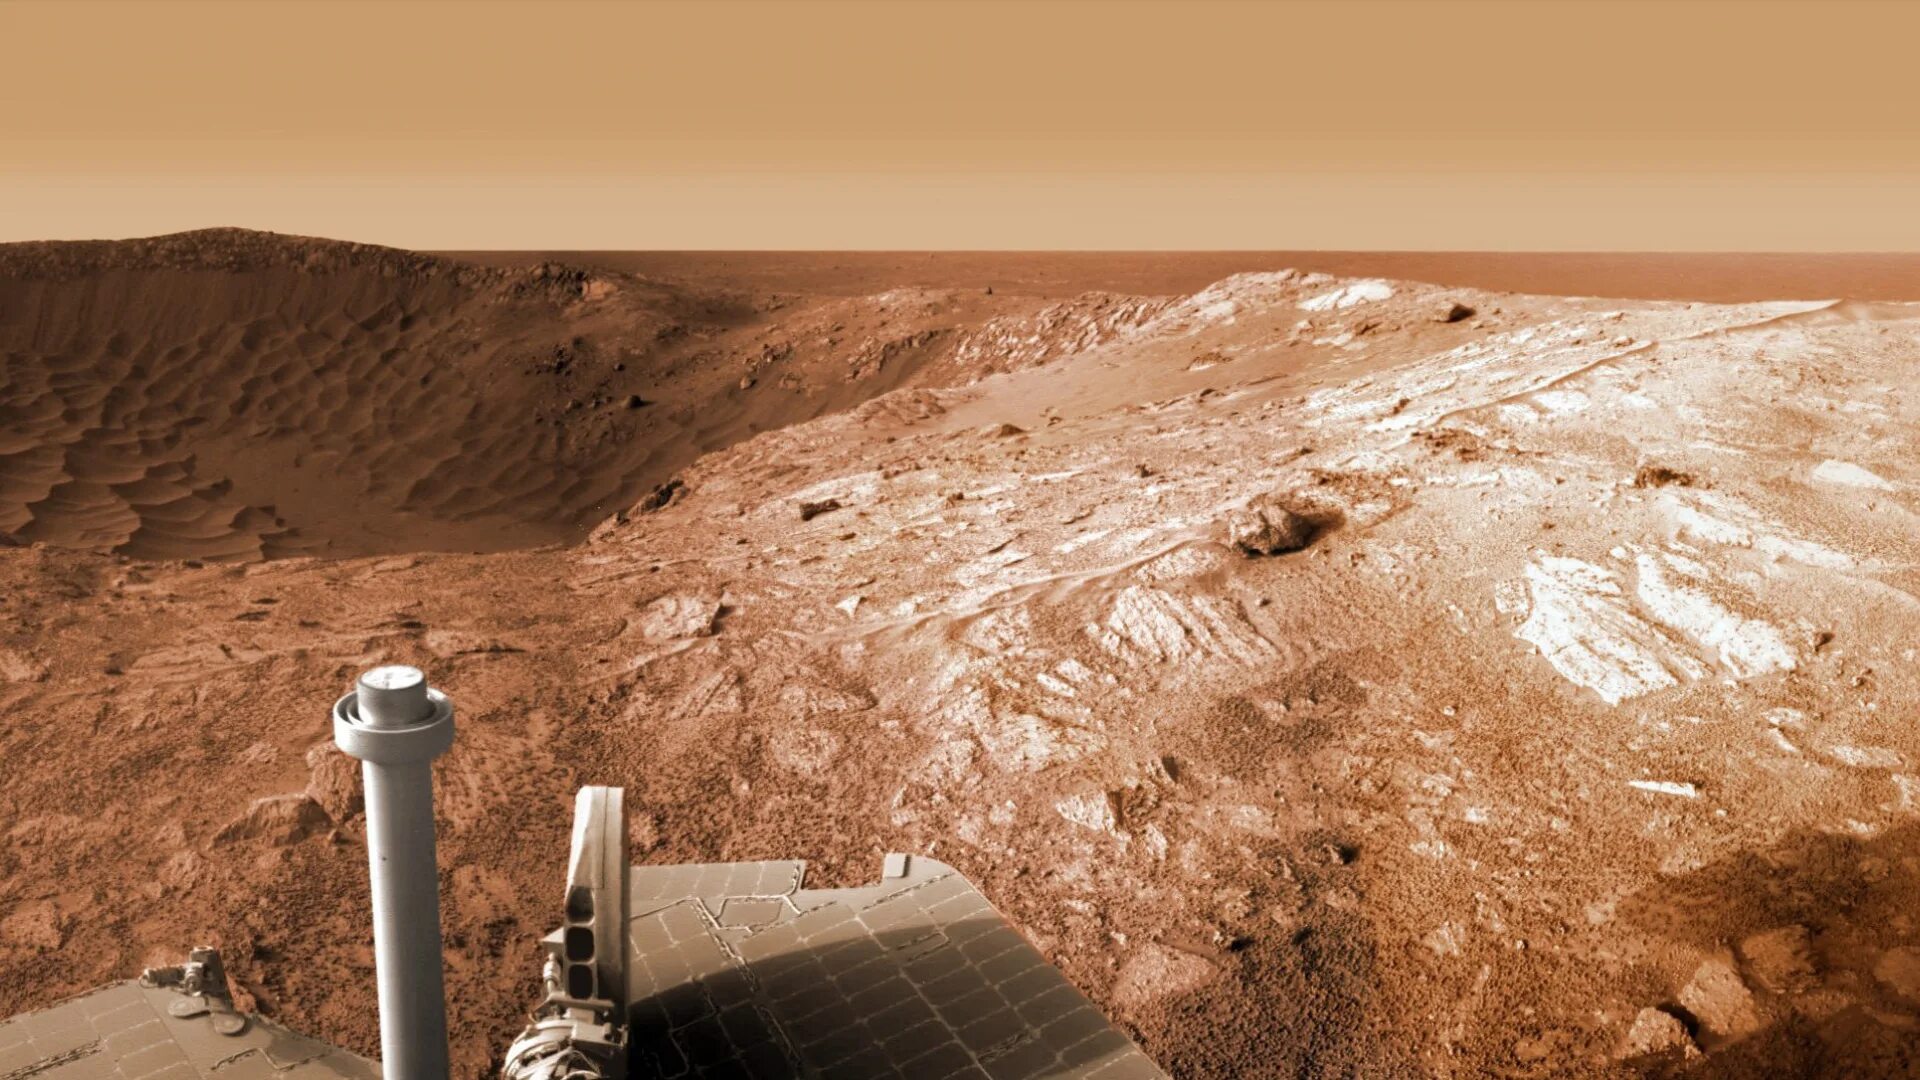 The other side of mars. Снимки планеты Марс с марсохода. Марс поверхность планеты с марсоходом.